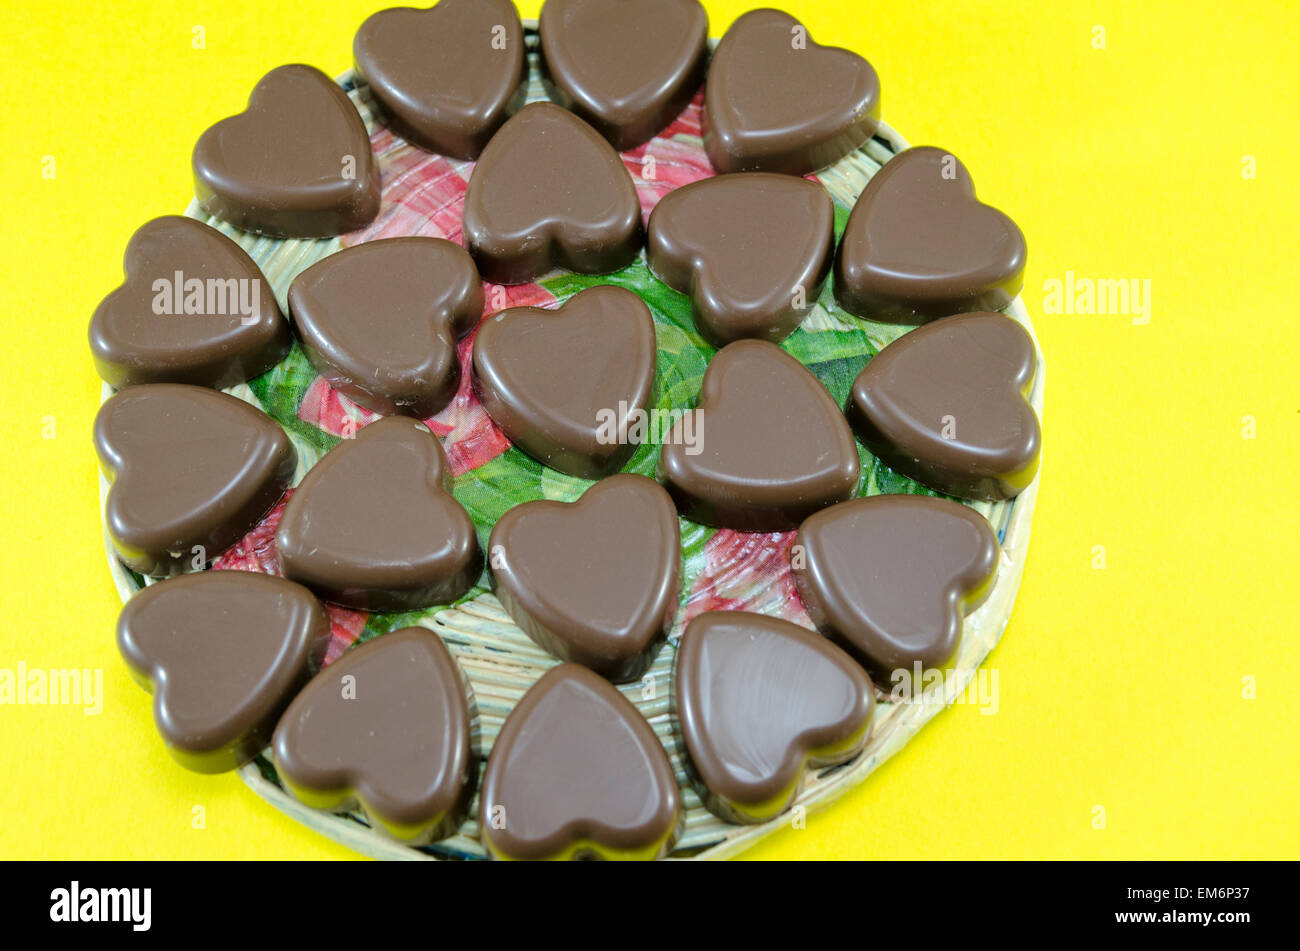 Deliciosamente buscando chocolate en forma de corazón sobre fondo amarillo Foto de stock